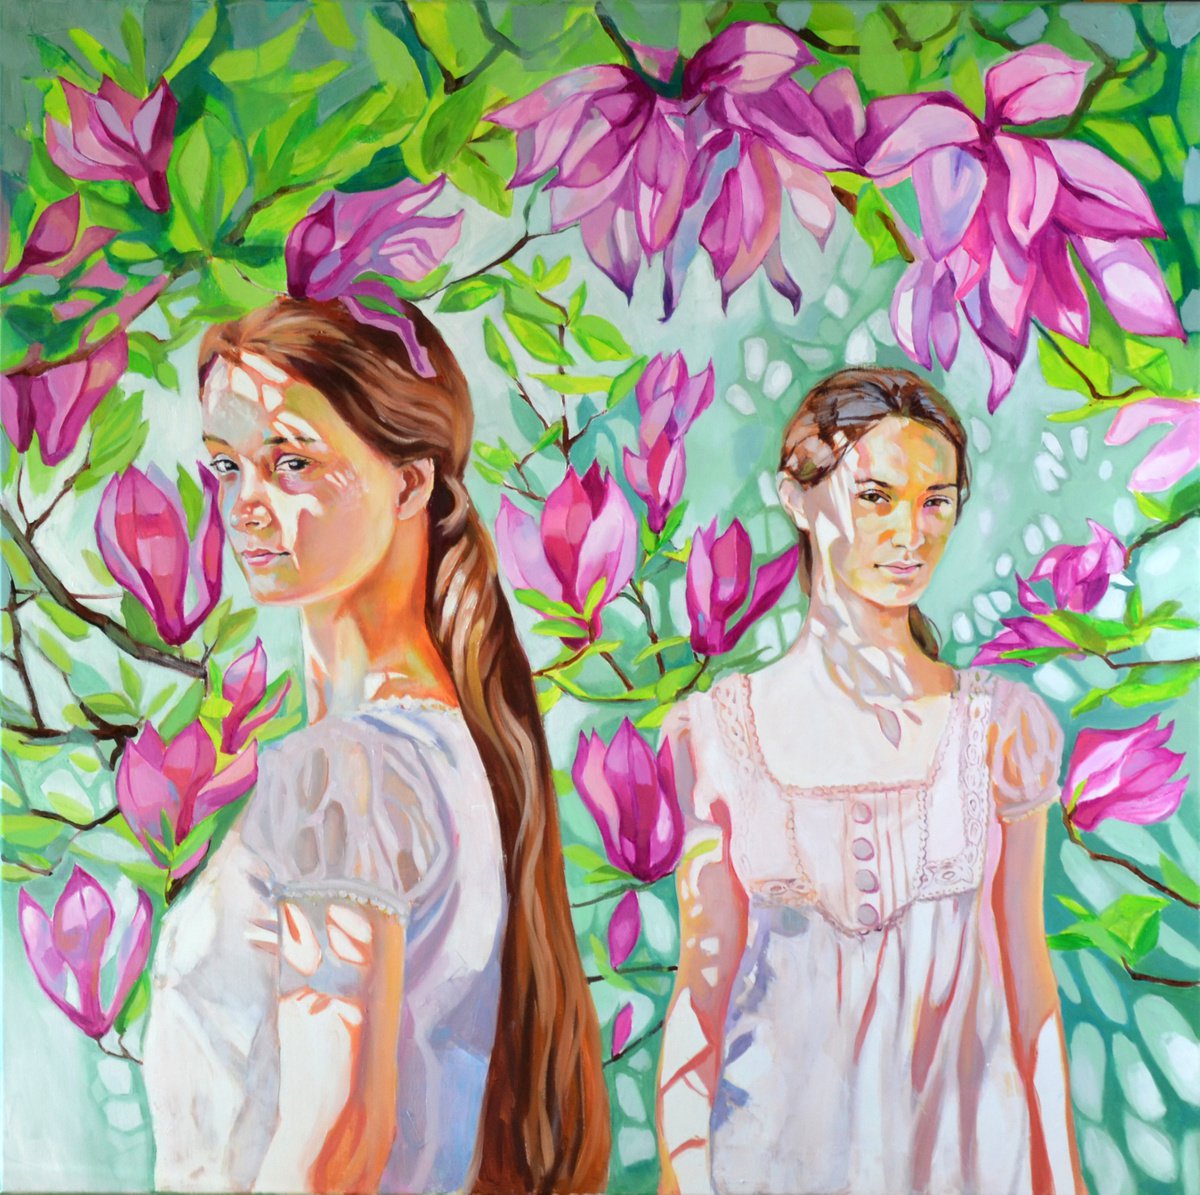 W cieniu Magnolii by Anna Masiul-Gozdecka